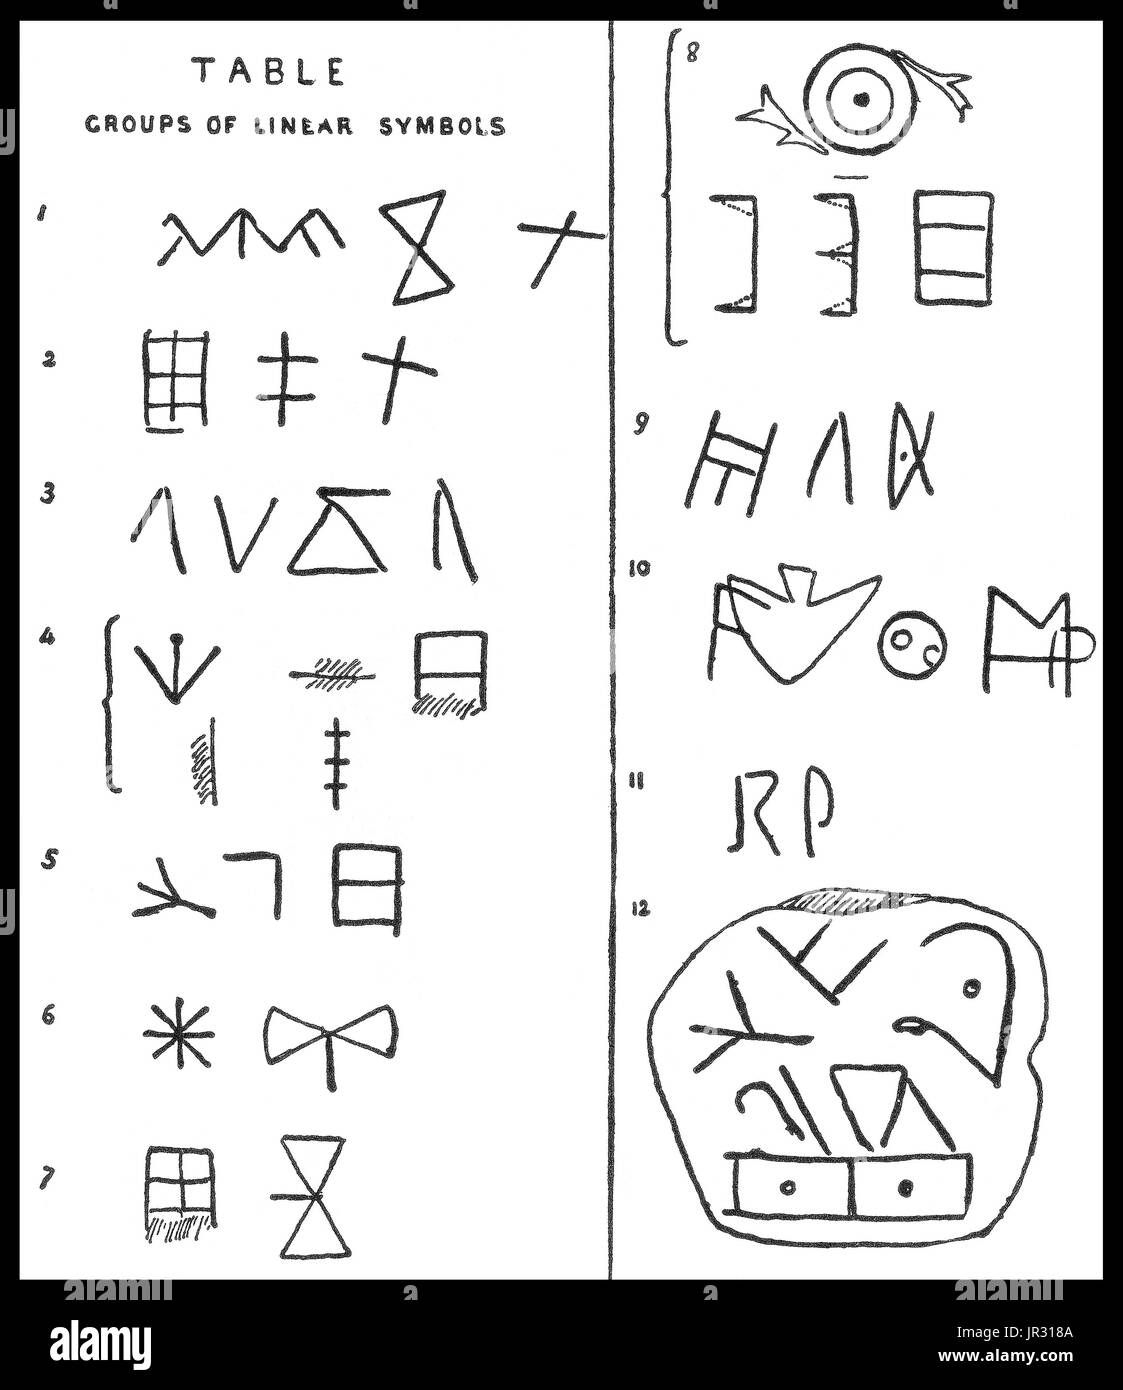 Un linéaire est l'un des deux systèmes d'écriture en ce moment undeciphered utilisé dans la Grèce antique (hiéroglyphique crétois est l'autre). Un linéaire a été le script principal utilisé dans les écrits religieux et palais de la civilisation minoenne. Il a été découvert par l'archéologue Sir Arthur Evans. C'est l'origine de la script linéaire B, qui a été plus tard utilisé par la civilisation mycénienne. Banque D'Images